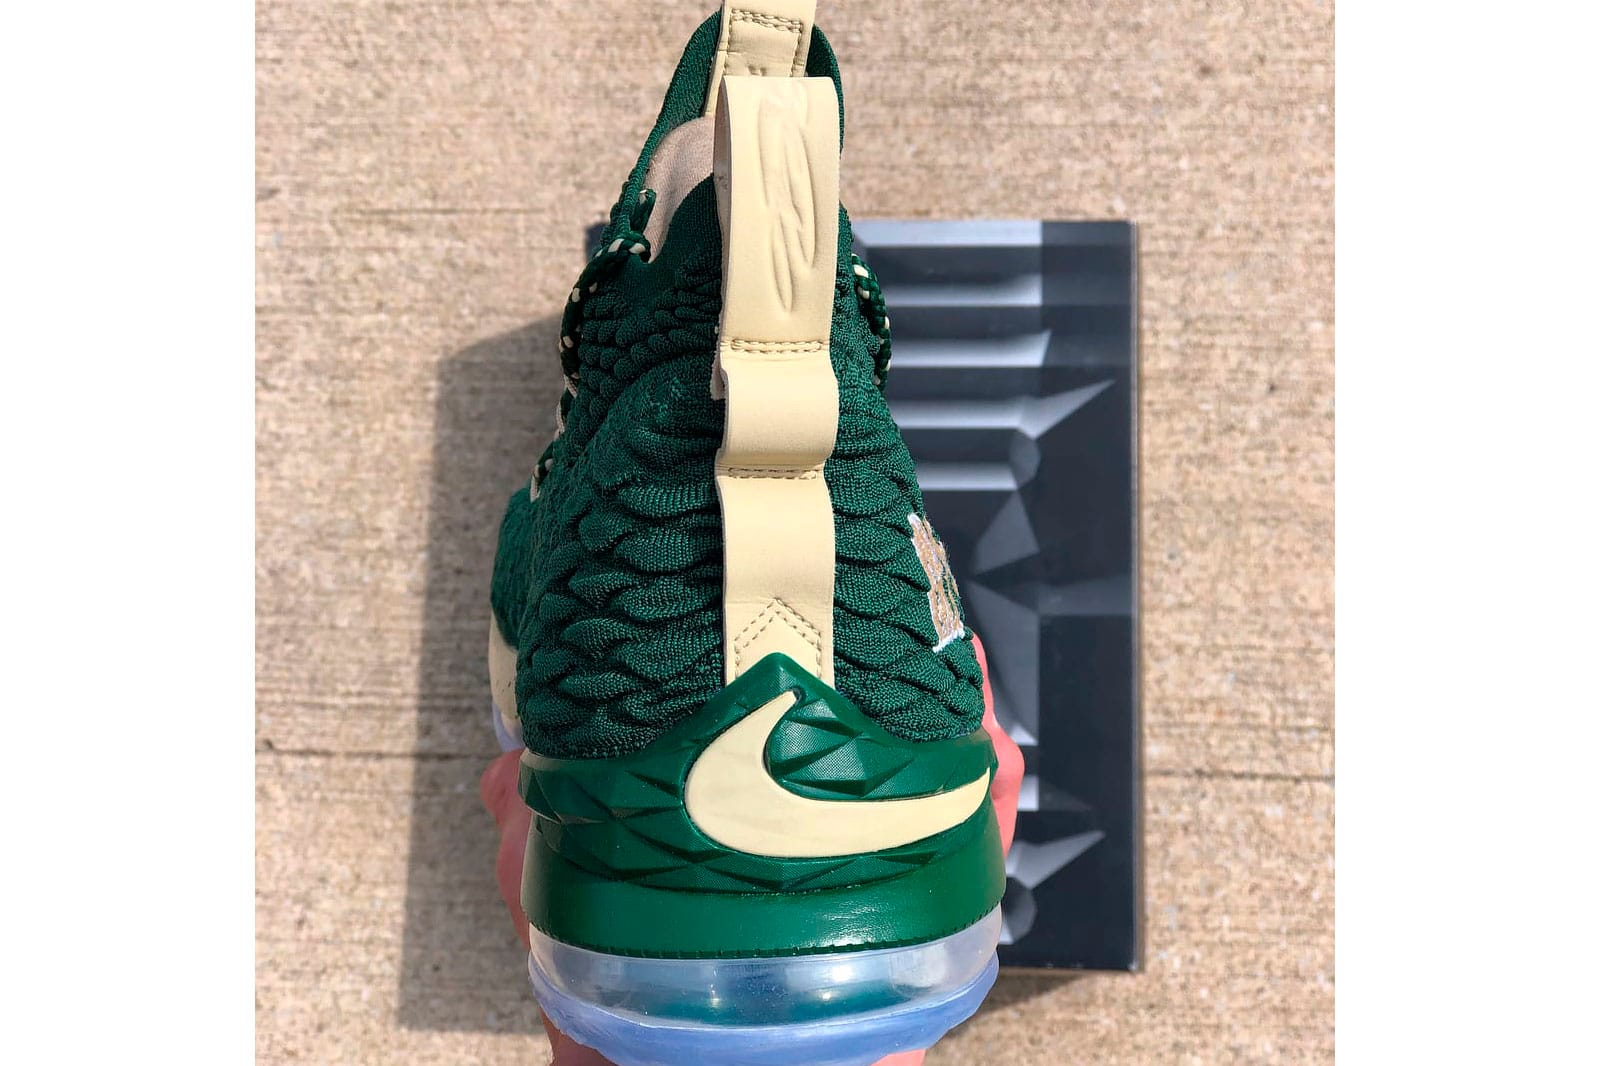 Exclusive Nike LeBron 15 SVSM Colorways 